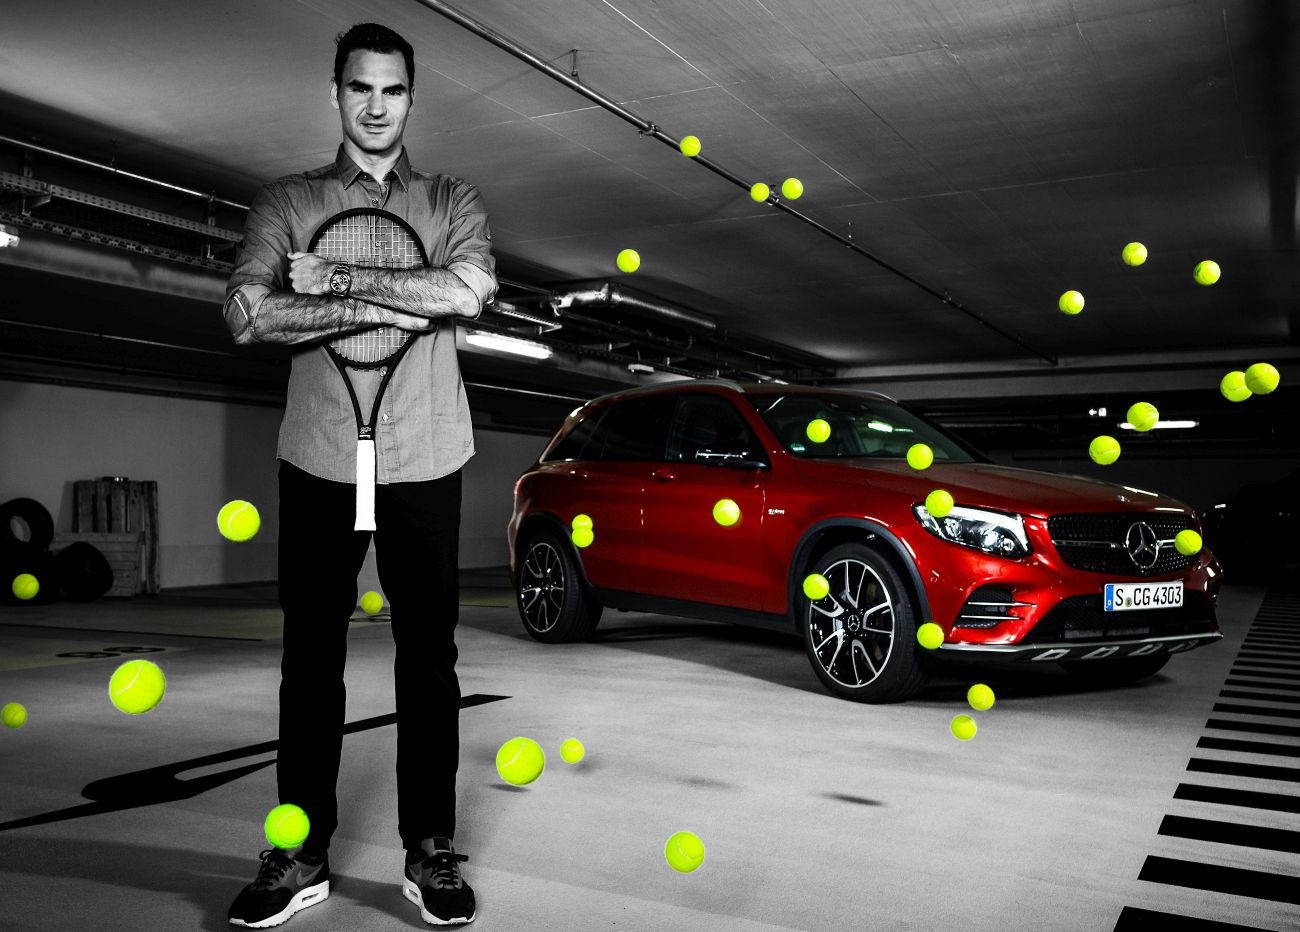 Erfolgreiche Partnerschaft wird verlängert: Zwanzigfacher Grand Slam-Sieger Roger Federer schlägt weiterhin mit Mercedes-Benz auf